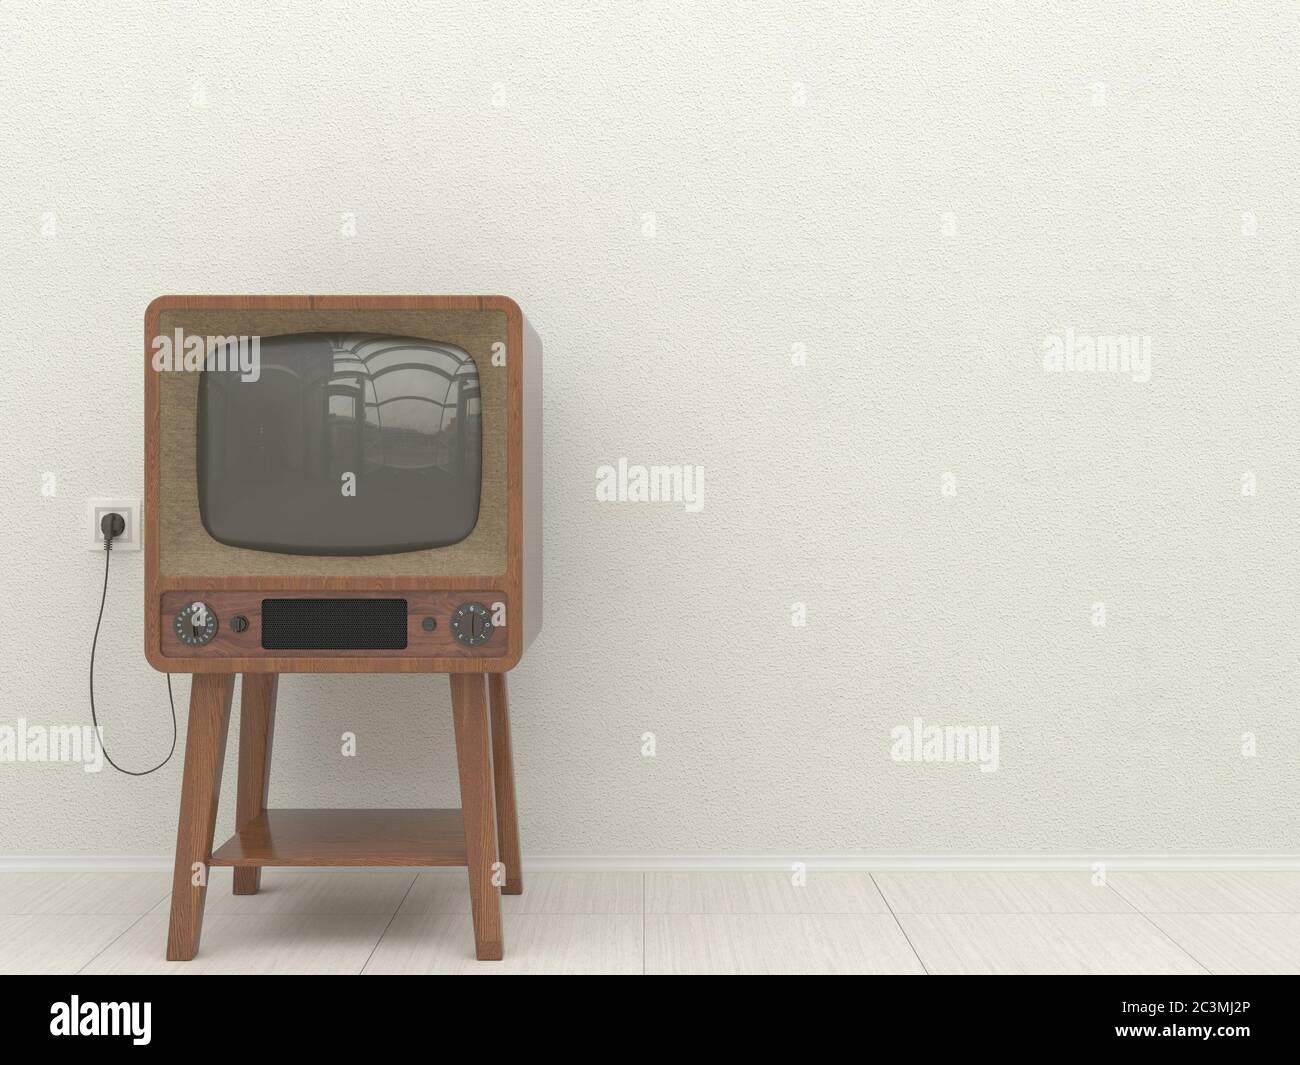 Vieux téléviseur rétro à l'intérieur d'un salon sur un fond de mur blanc en plâtré. Copier l'espace. Illustration 3D. Banque D'Images